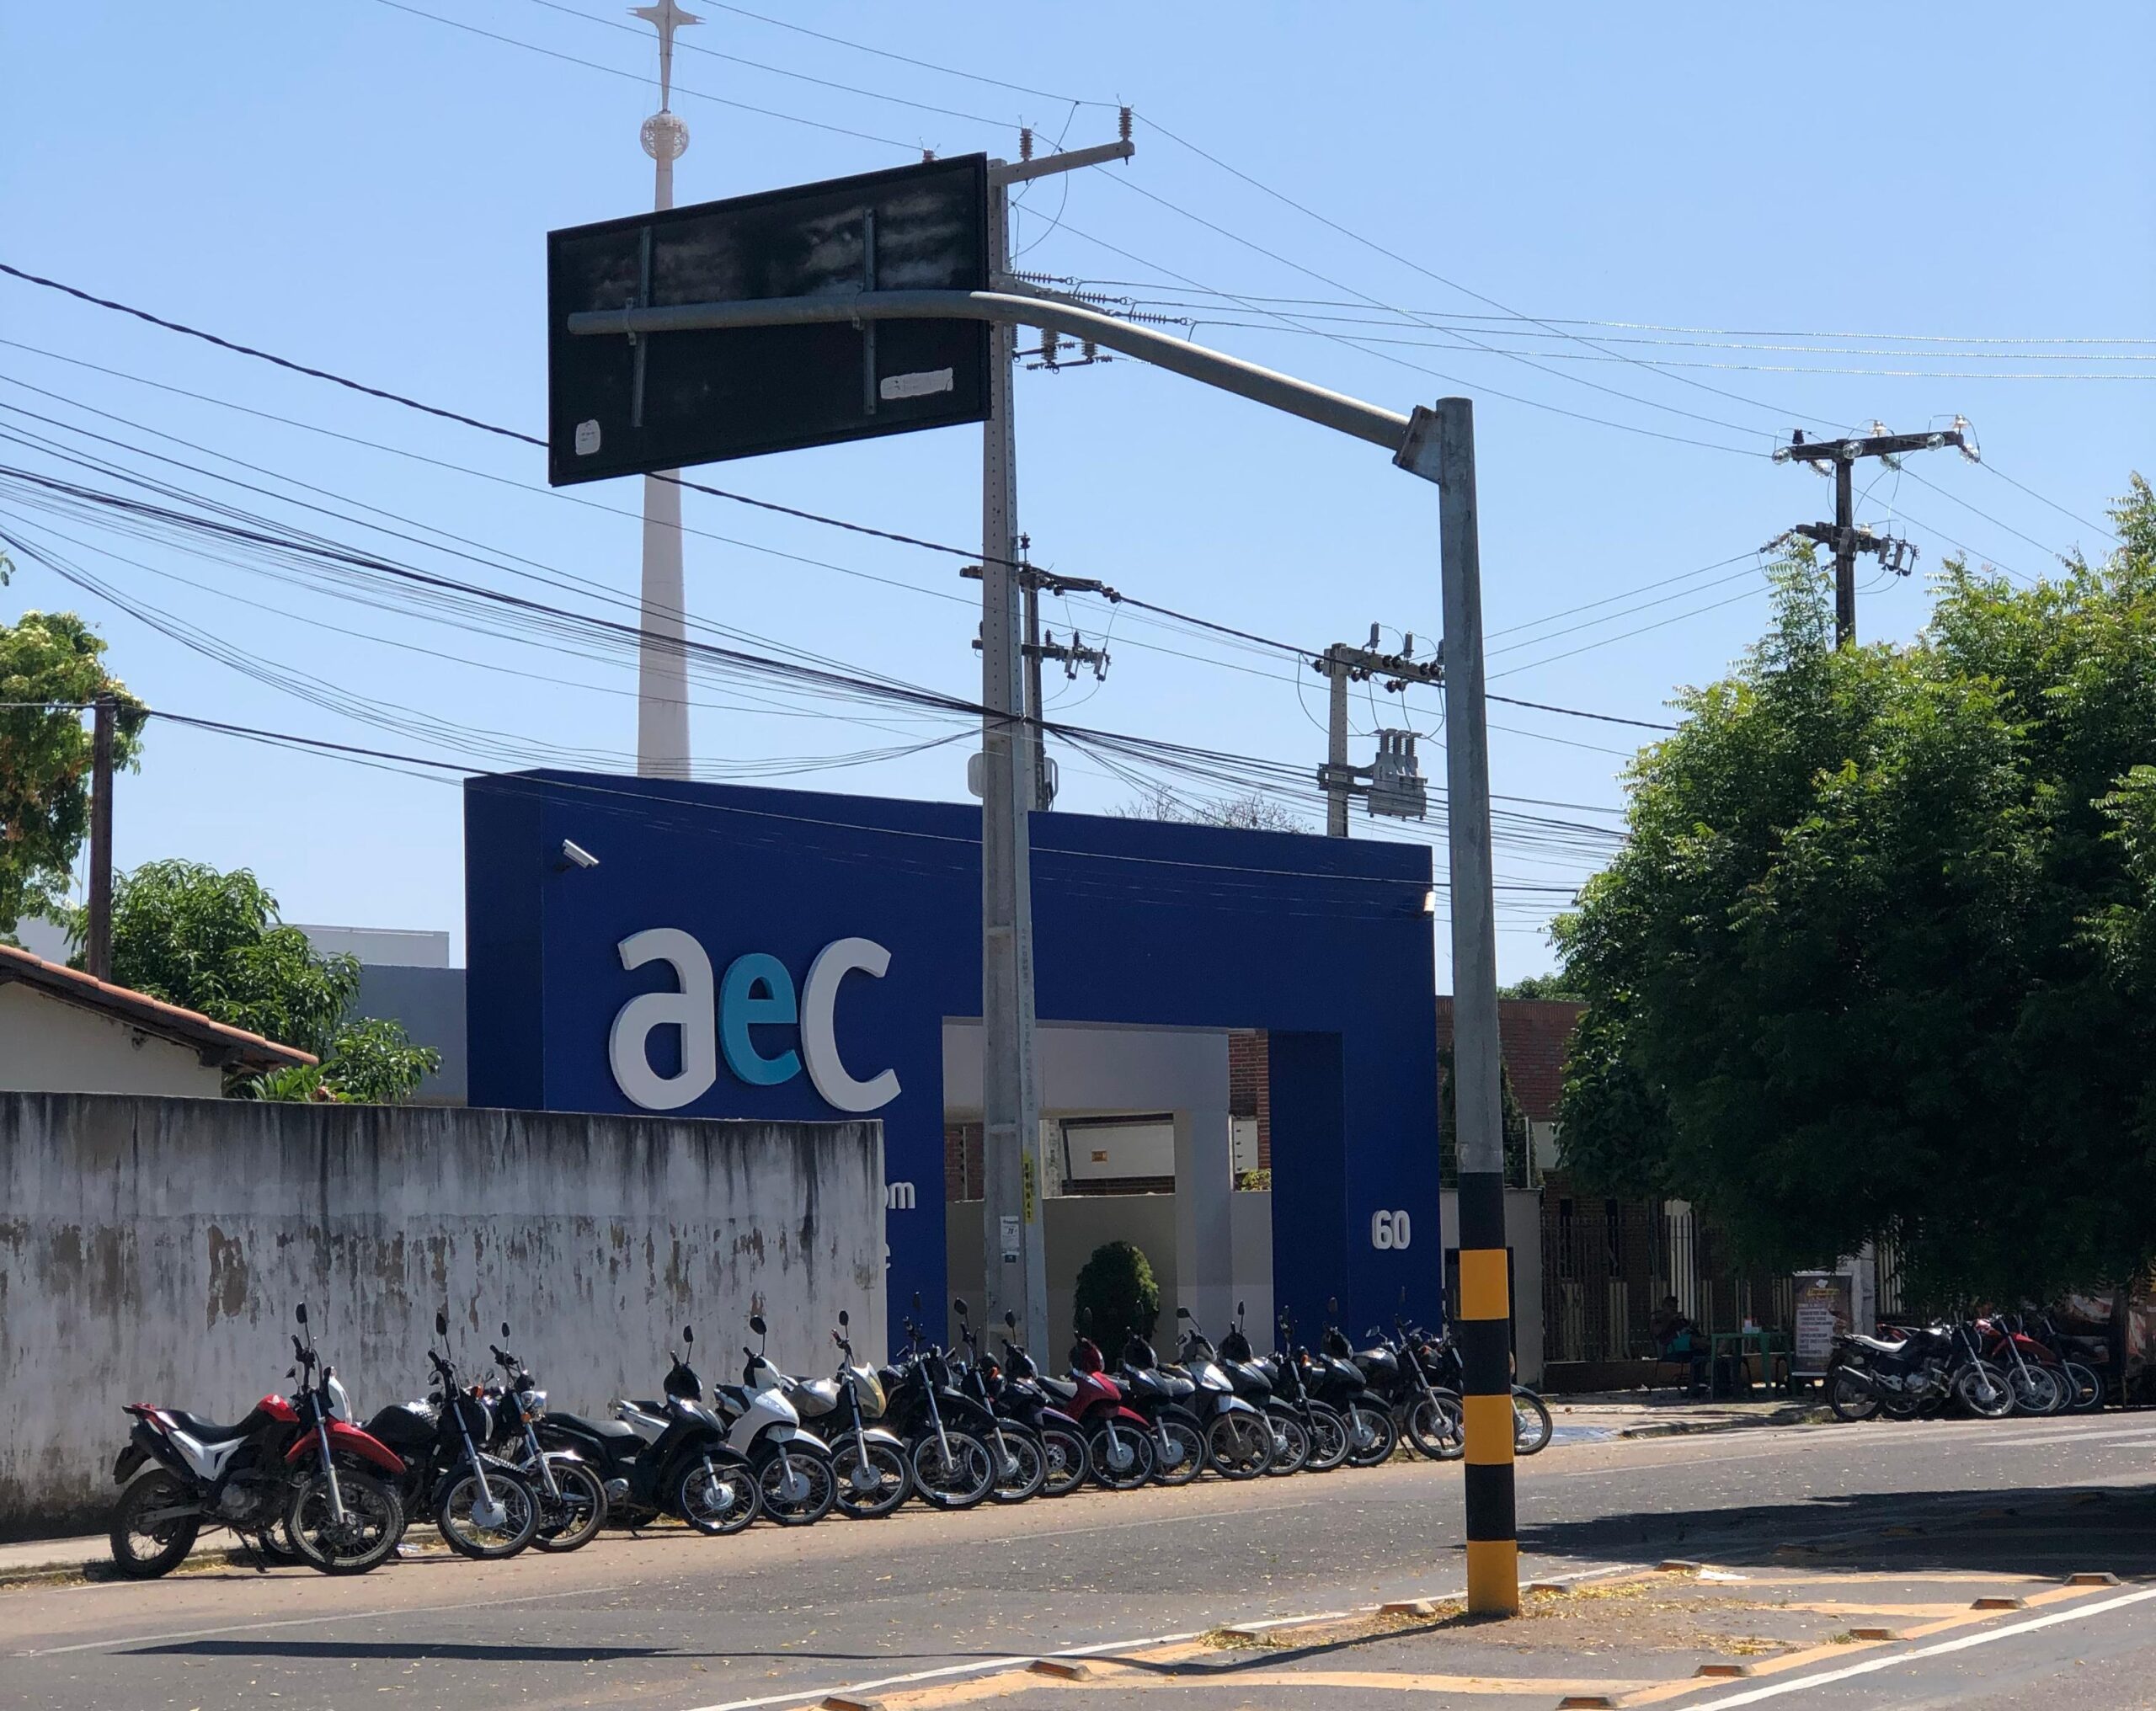 AeC abre vagas de emprego em Mossoró com oportunidade para